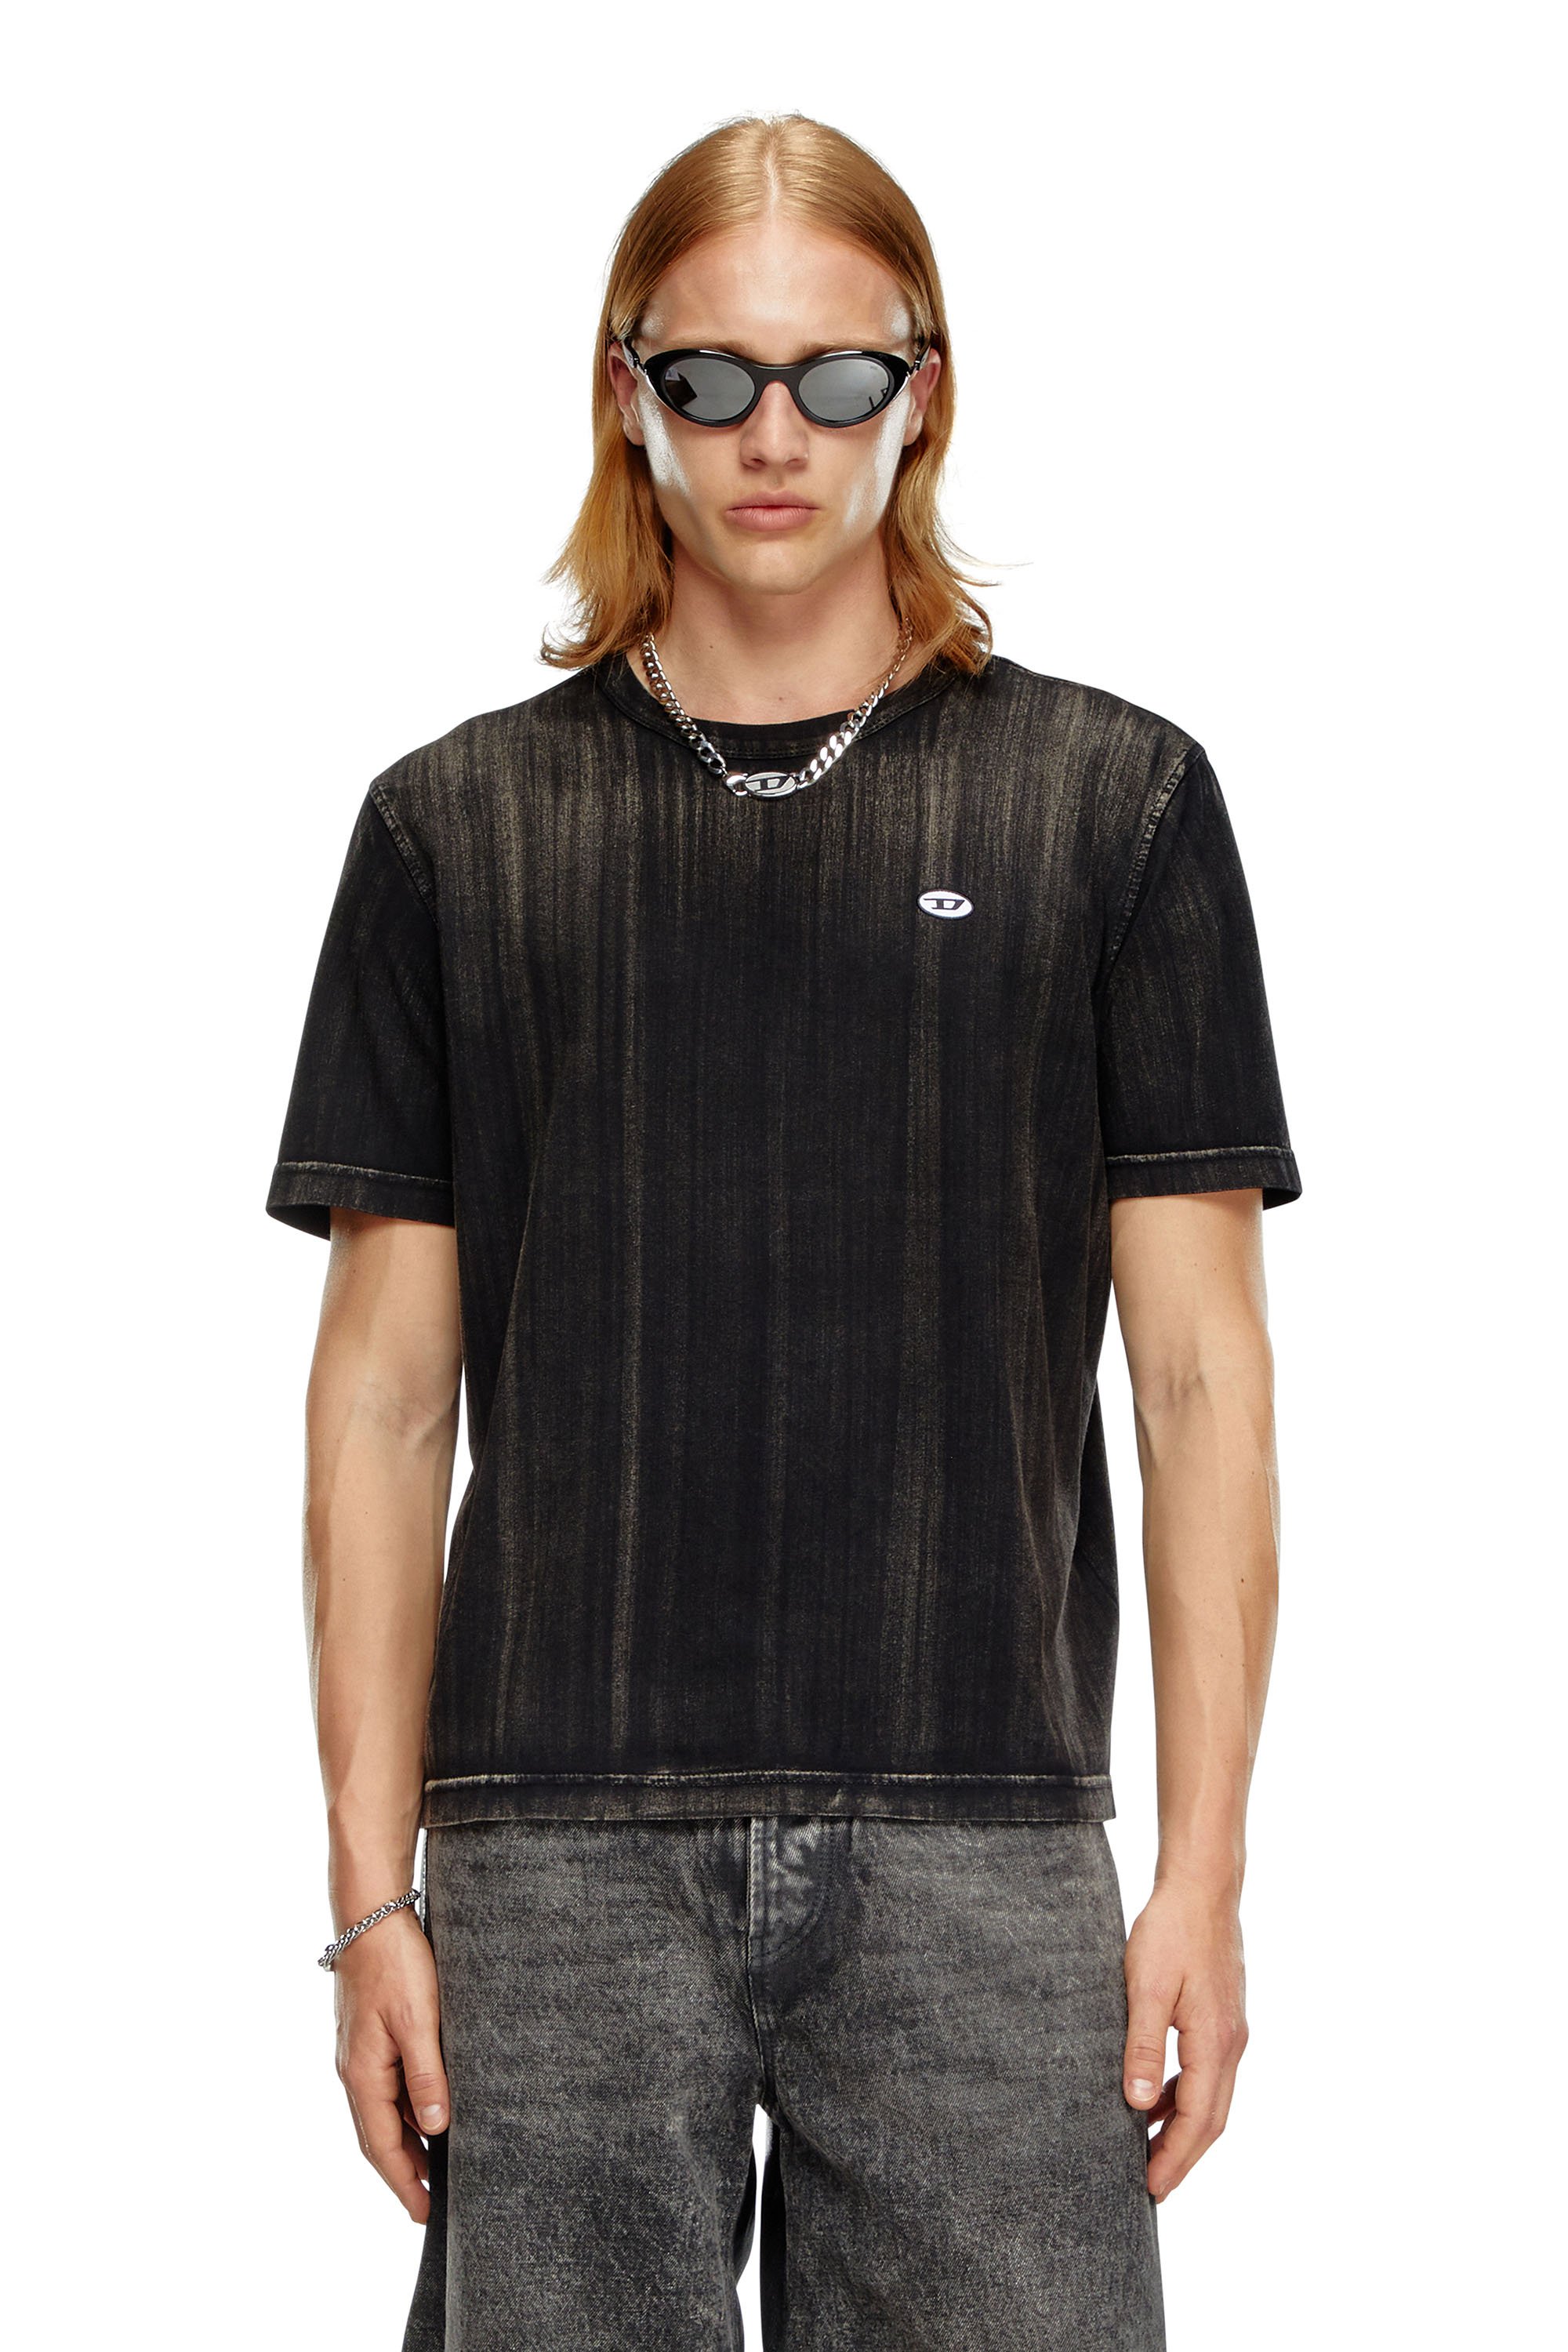 Diesel - T-ADJUST-K8, Hombre Camiseta con desteñido a pinceladas in Negro - Image 1